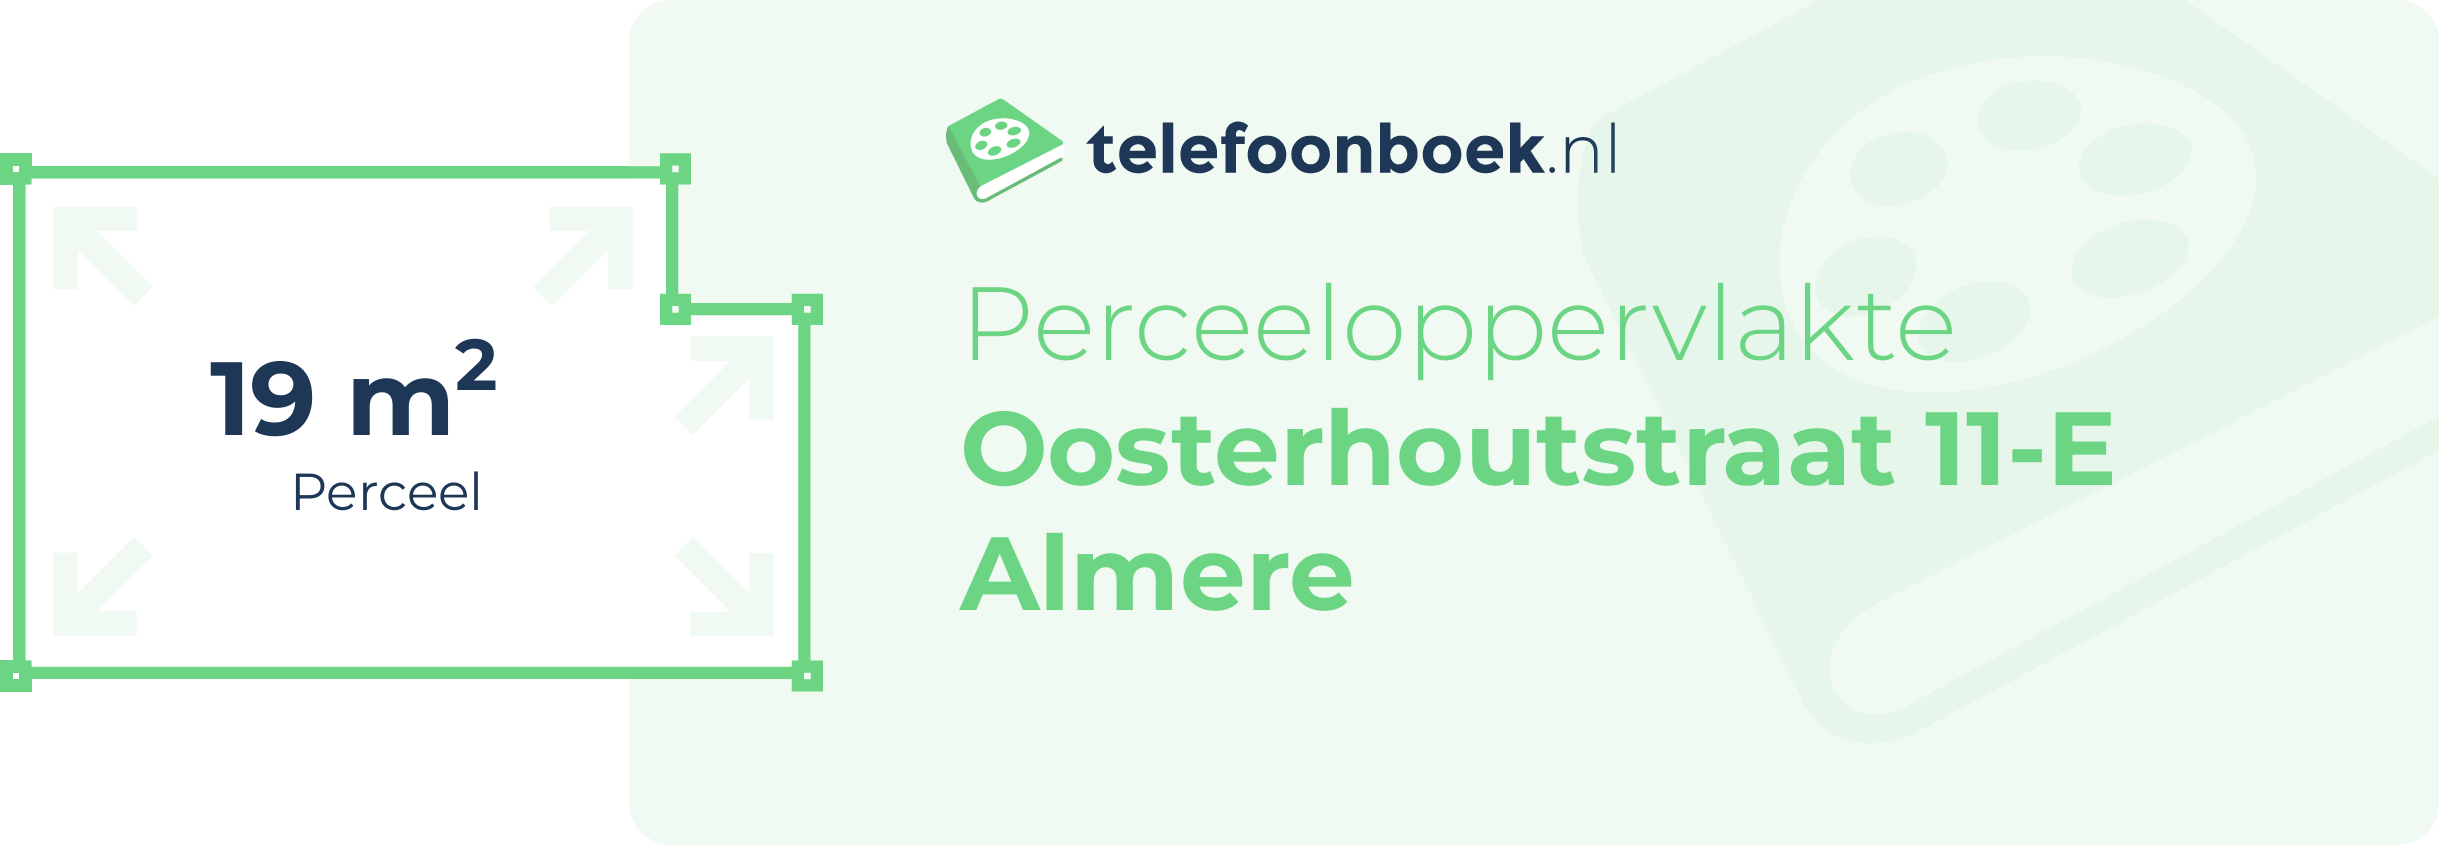 Perceeloppervlakte Oosterhoutstraat 11-E Almere